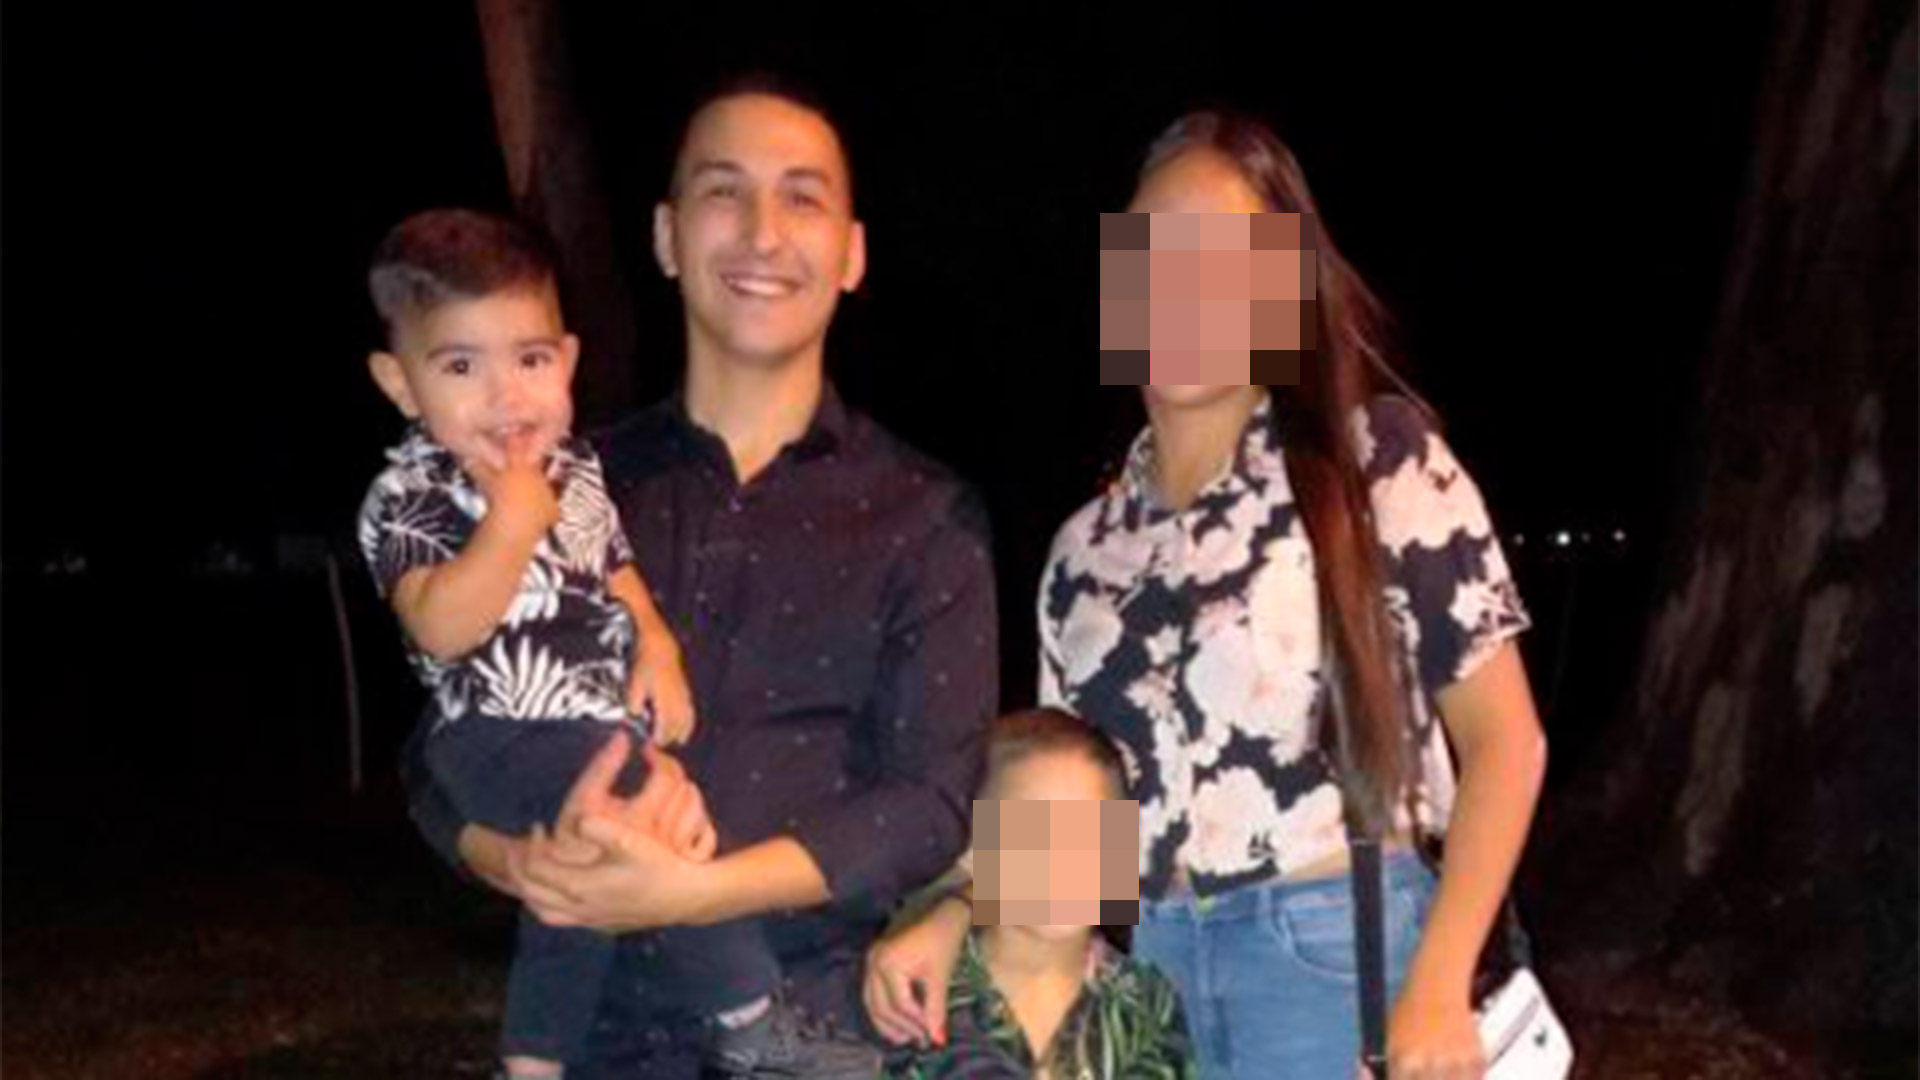 Un ajuste de cuentas narco, sicarios y 40 tiros: la trama detrás del crimen  de un padre y su bebé de un año en Rosario - Infobae